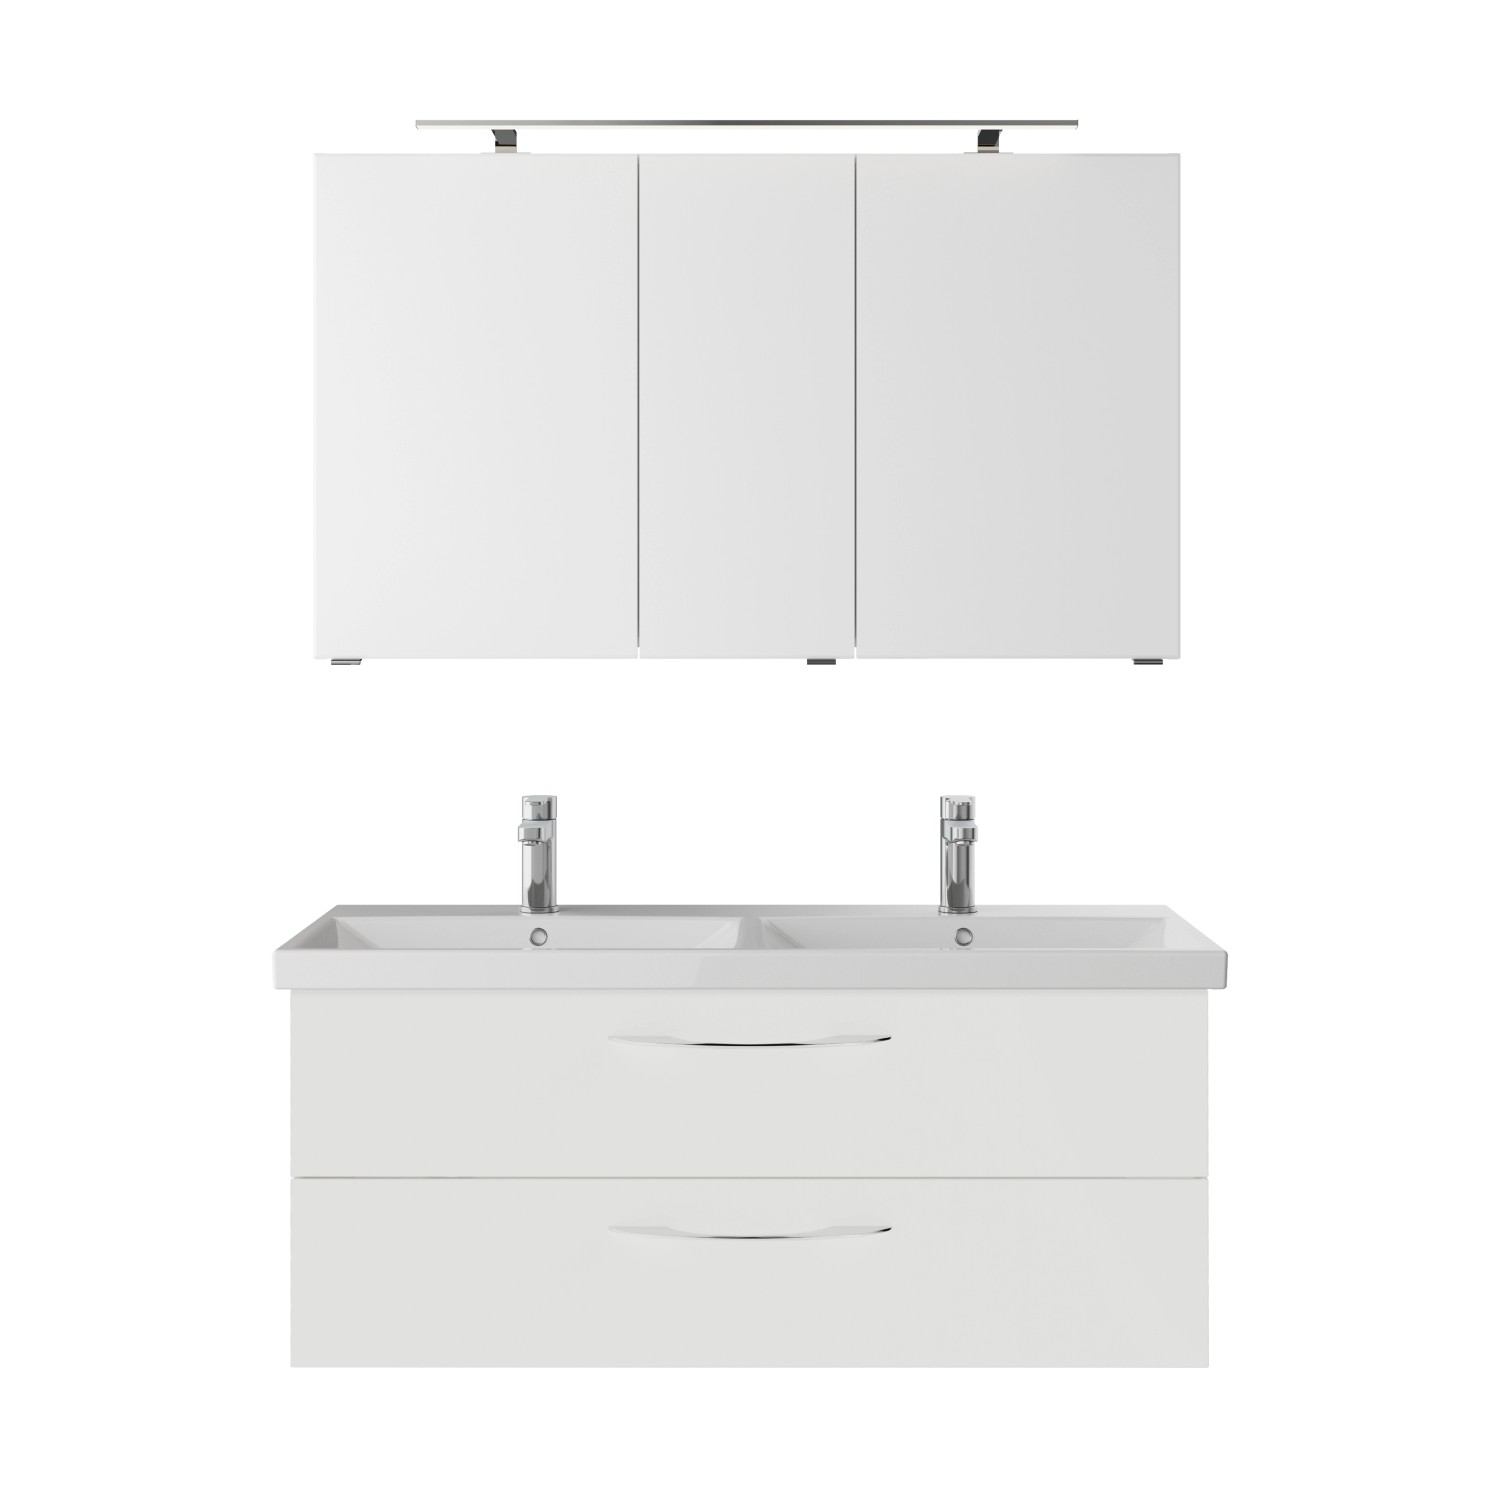 Pelipal Badmöbel-Set Serie 4035 3-teilig in Weiß Glanz mit Spiegelschrank von Pelipal